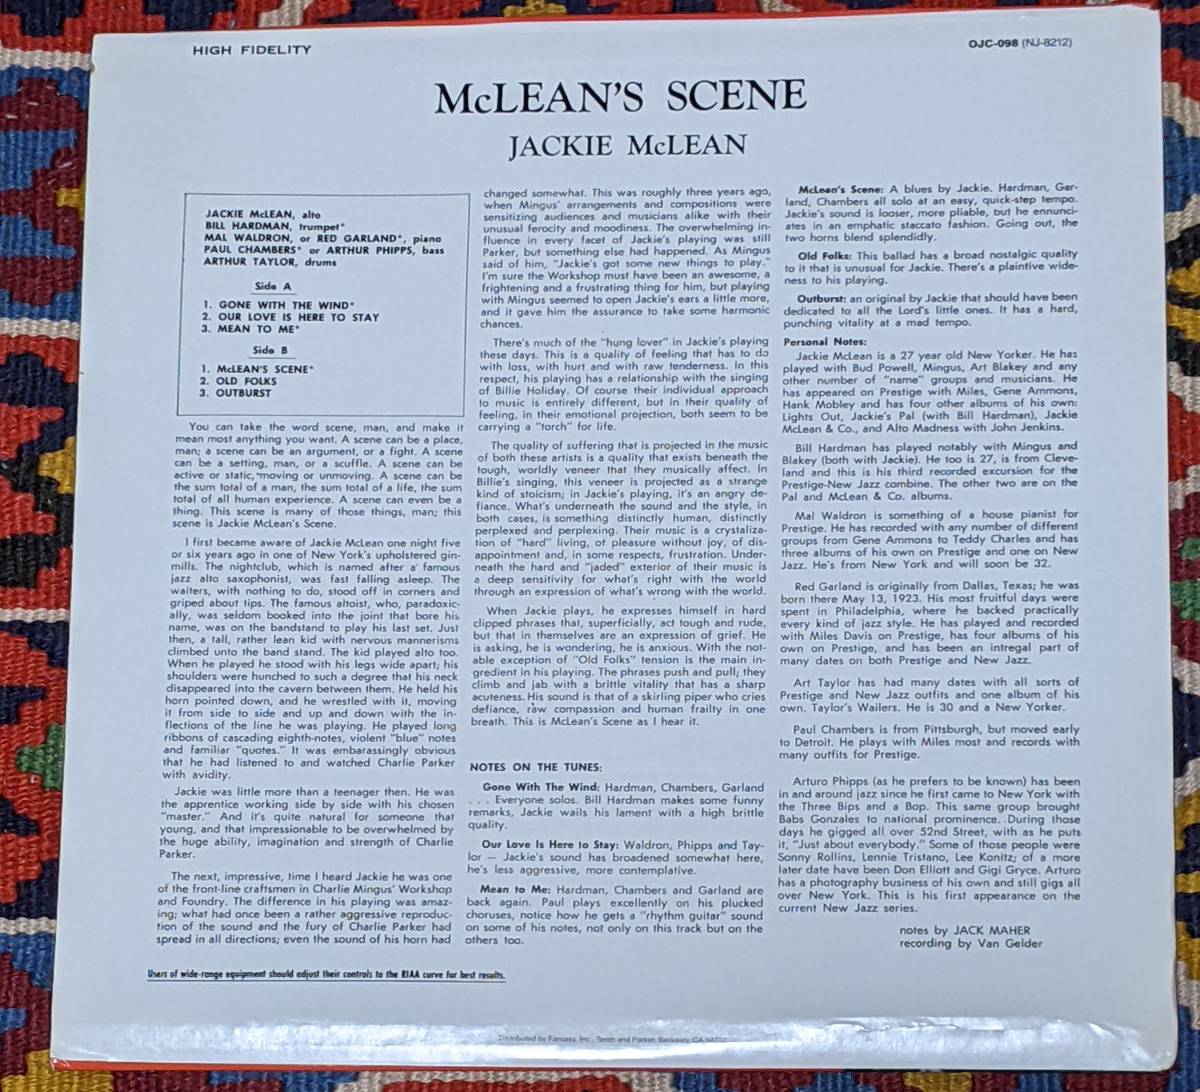 50's ジャッキー・マクリーン(as) Jackie McLean (US盤LP)/ マクリーンズ・シーン McLean's Scene OJC-098 NJ-8212 1956,57年録音_画像10